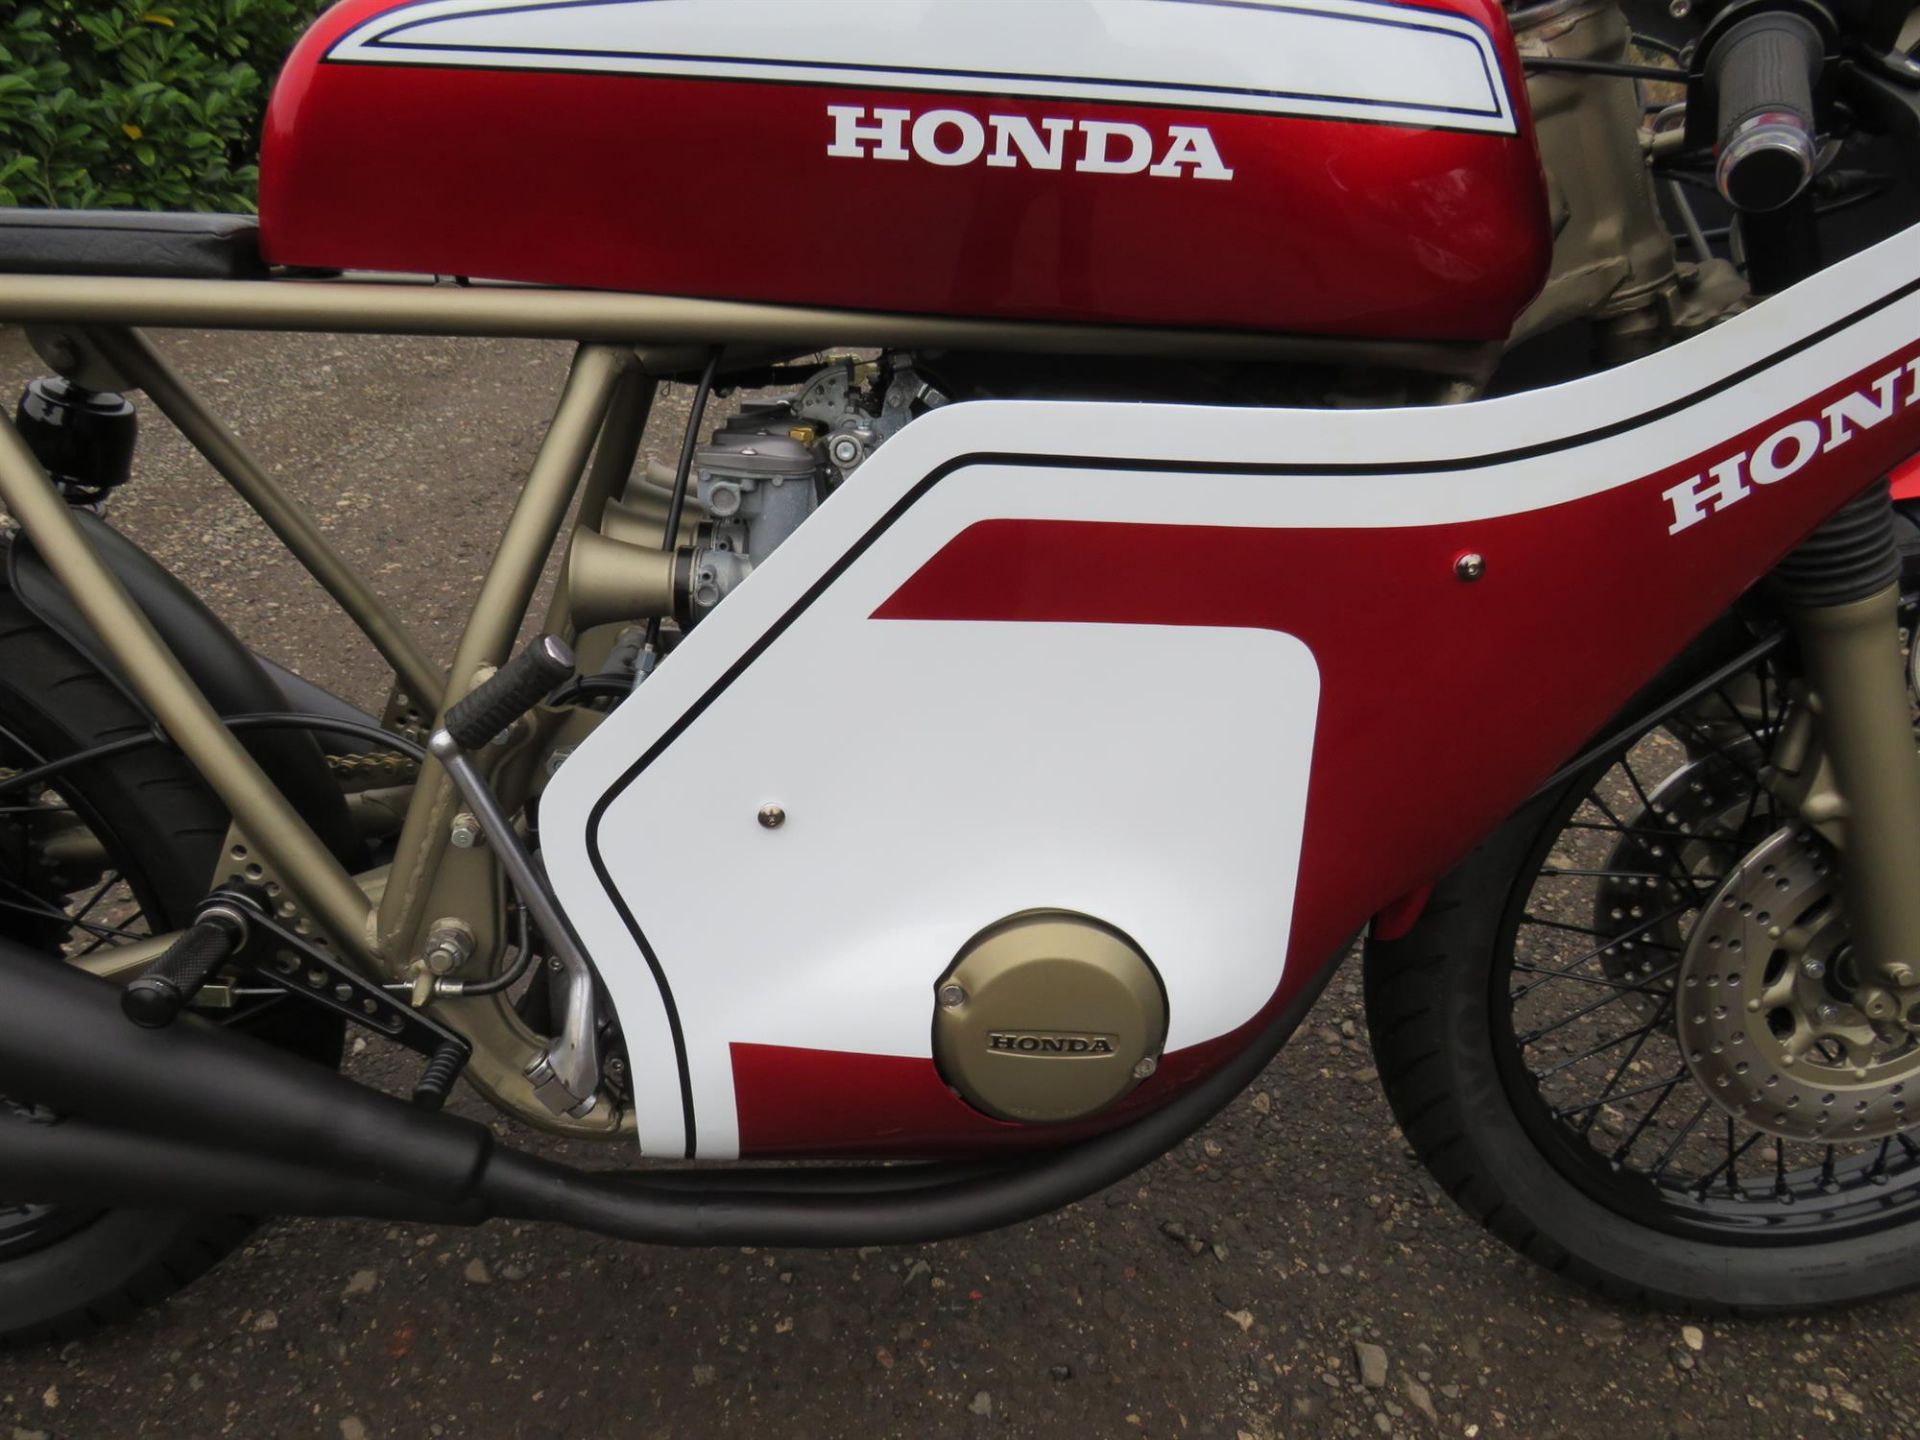 1979 Honda CB550 'CR750' Replica 544cc - Image 3 of 10